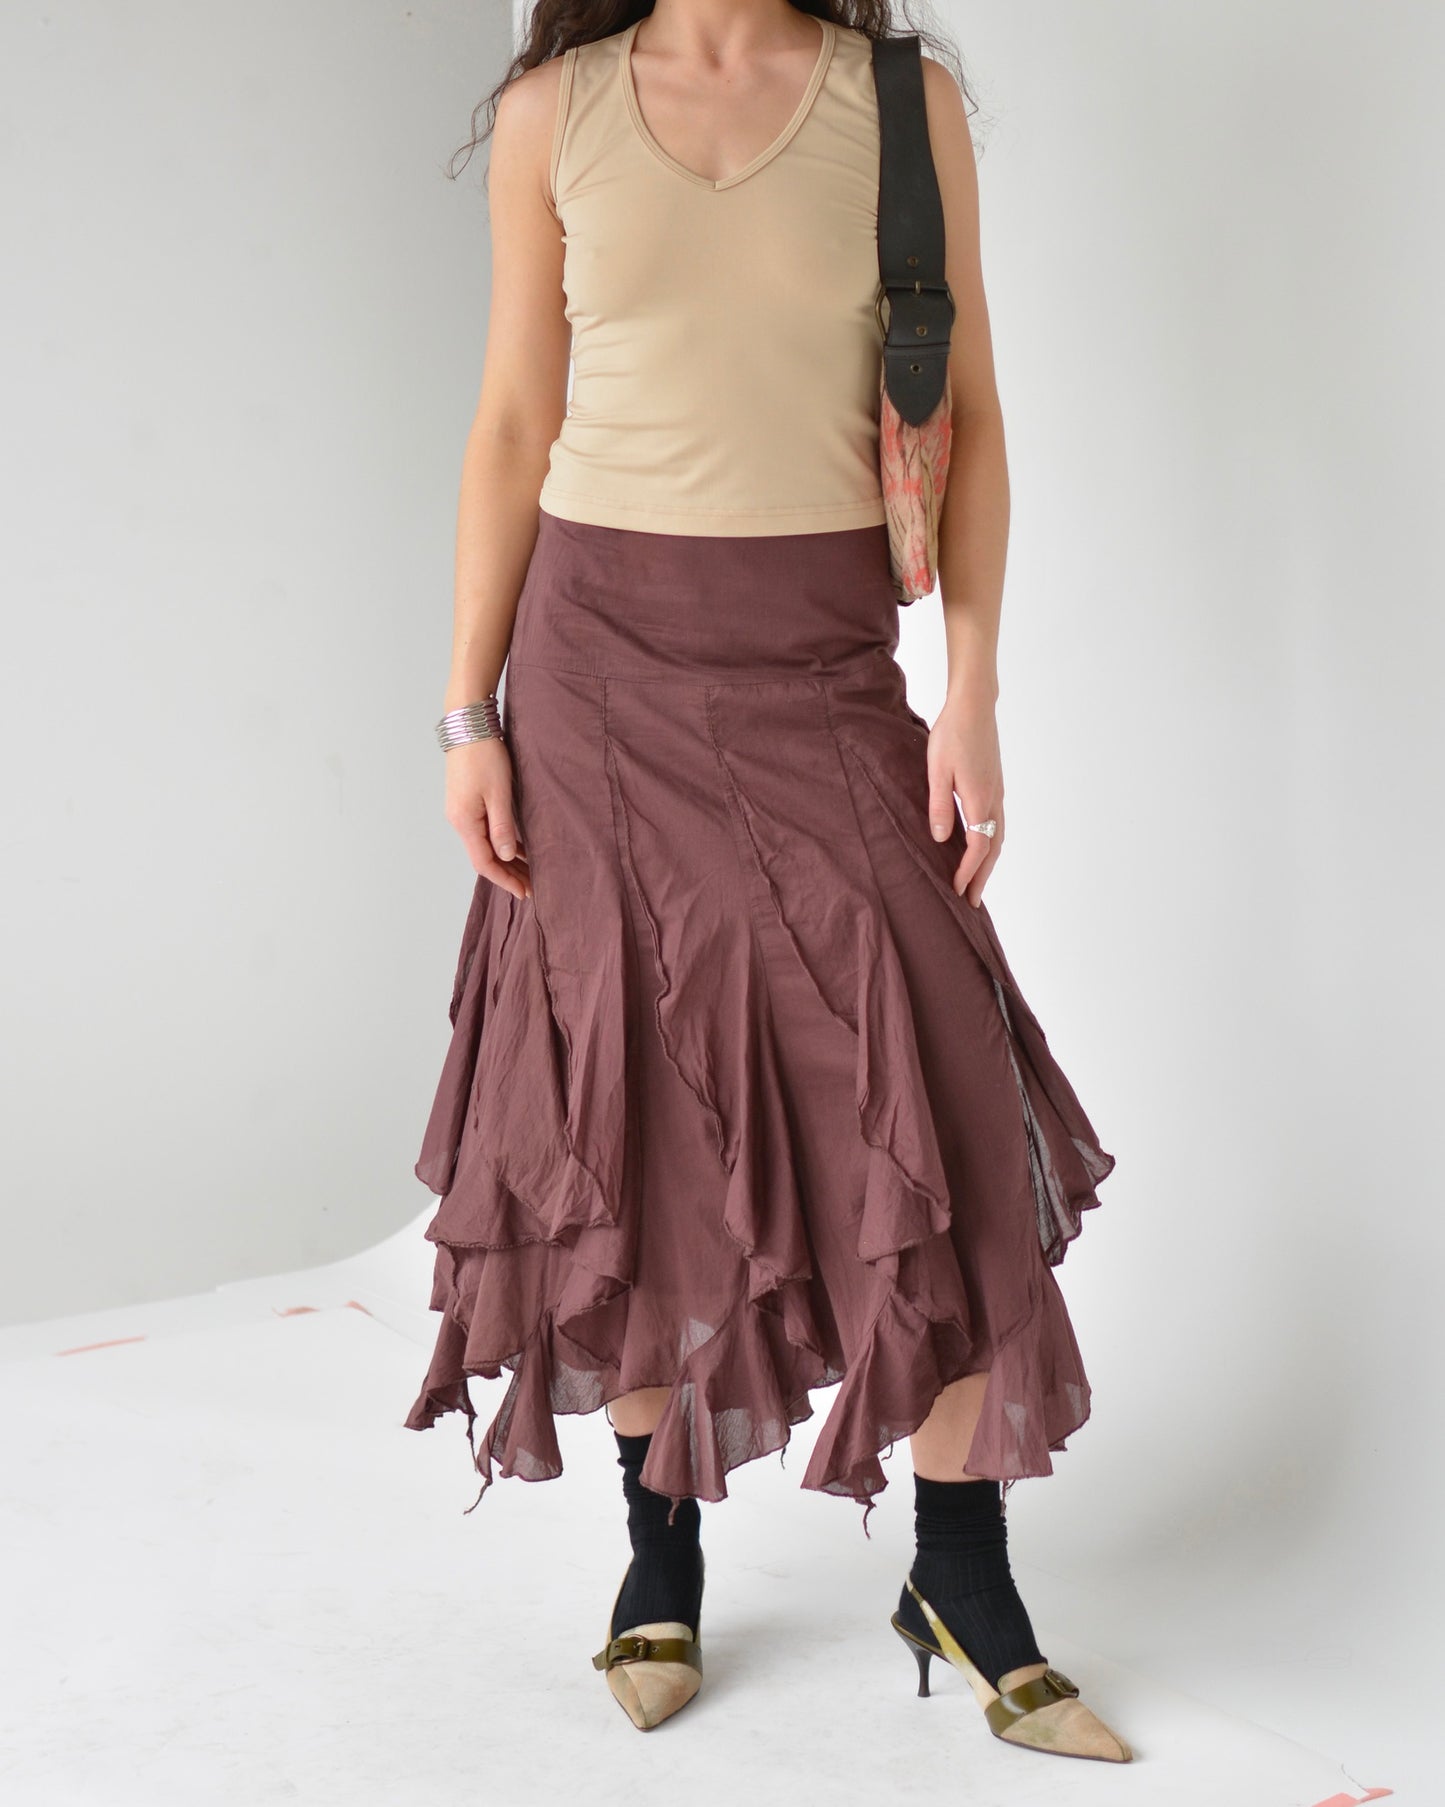 Plum Ruffle Midi Skirt (M)